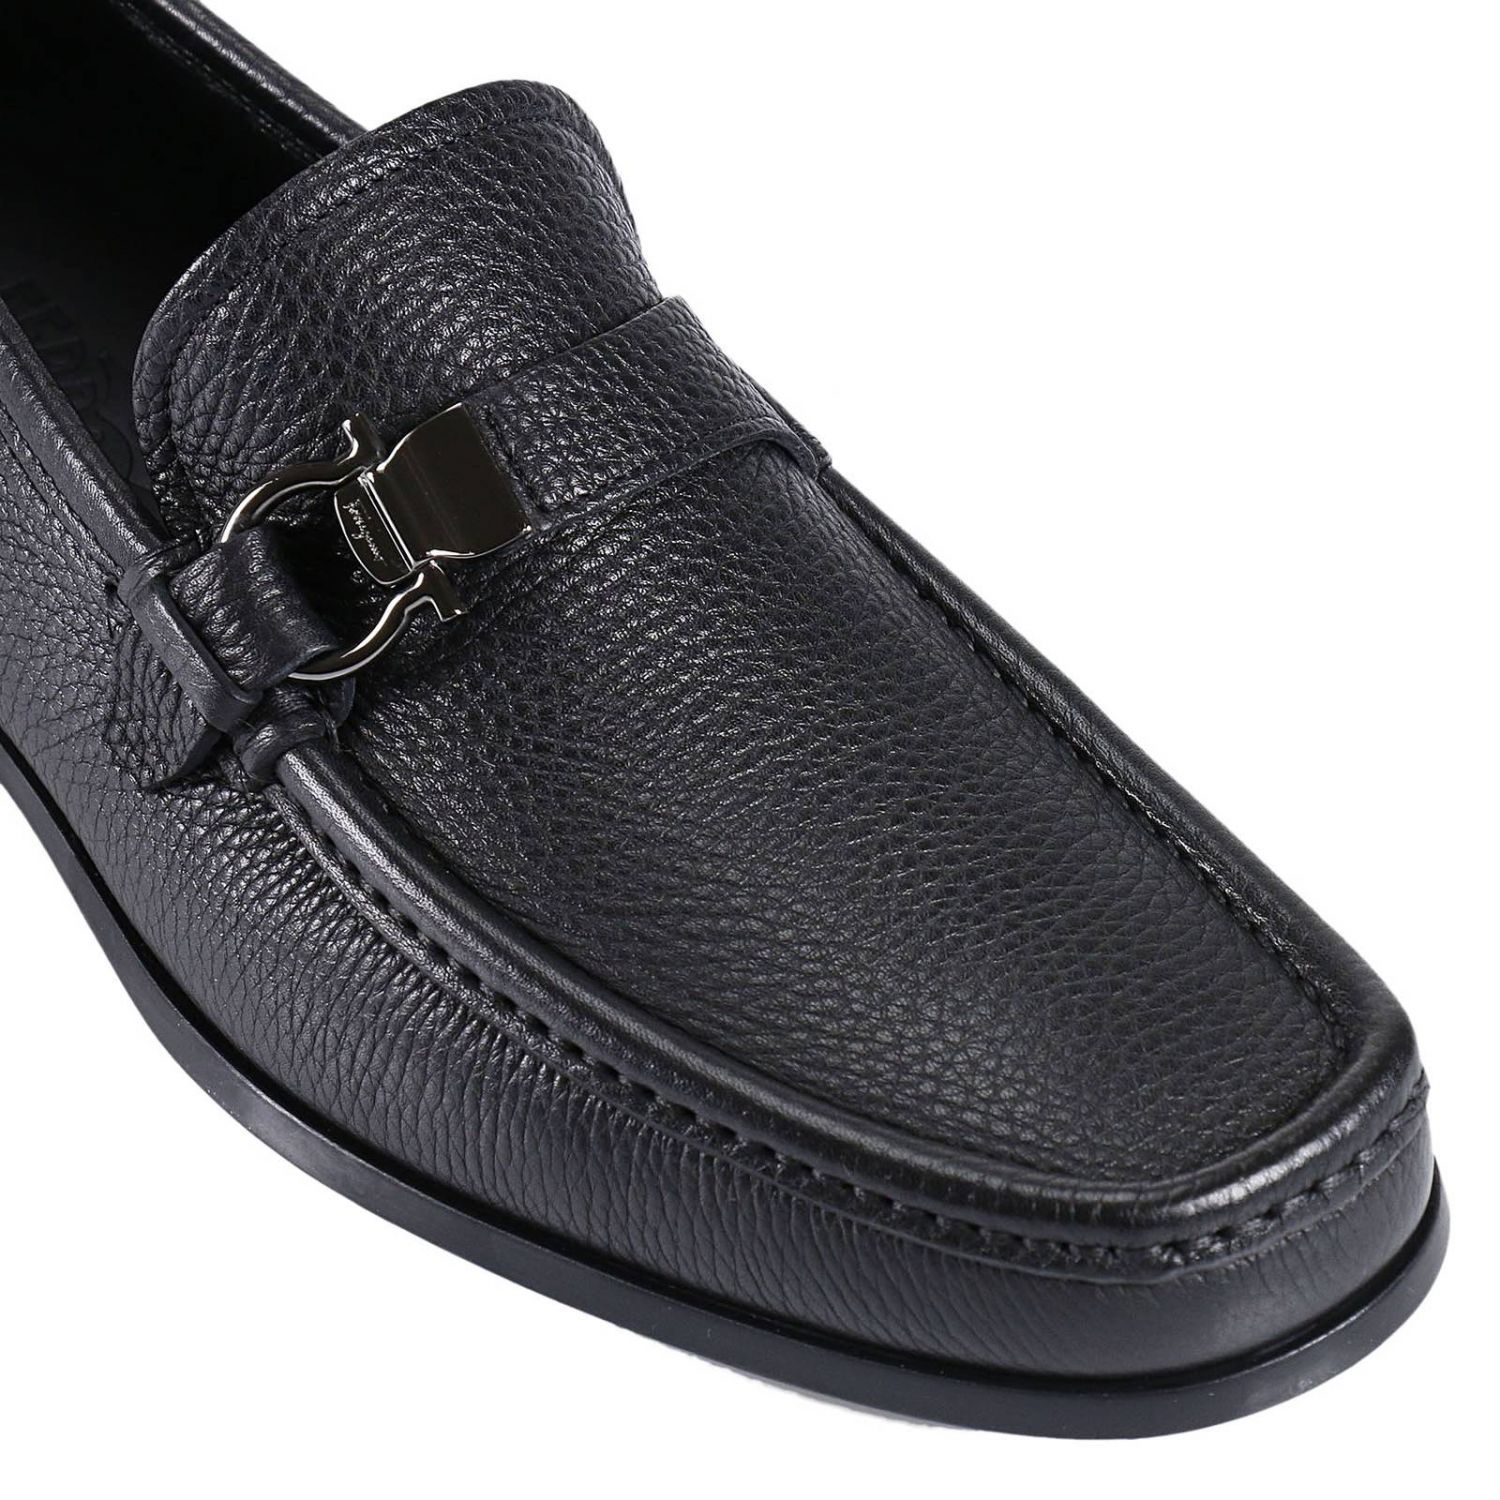 Salvatore Ferragamo - Loafers Shoes Men Salvatore Ferragamo - black ...